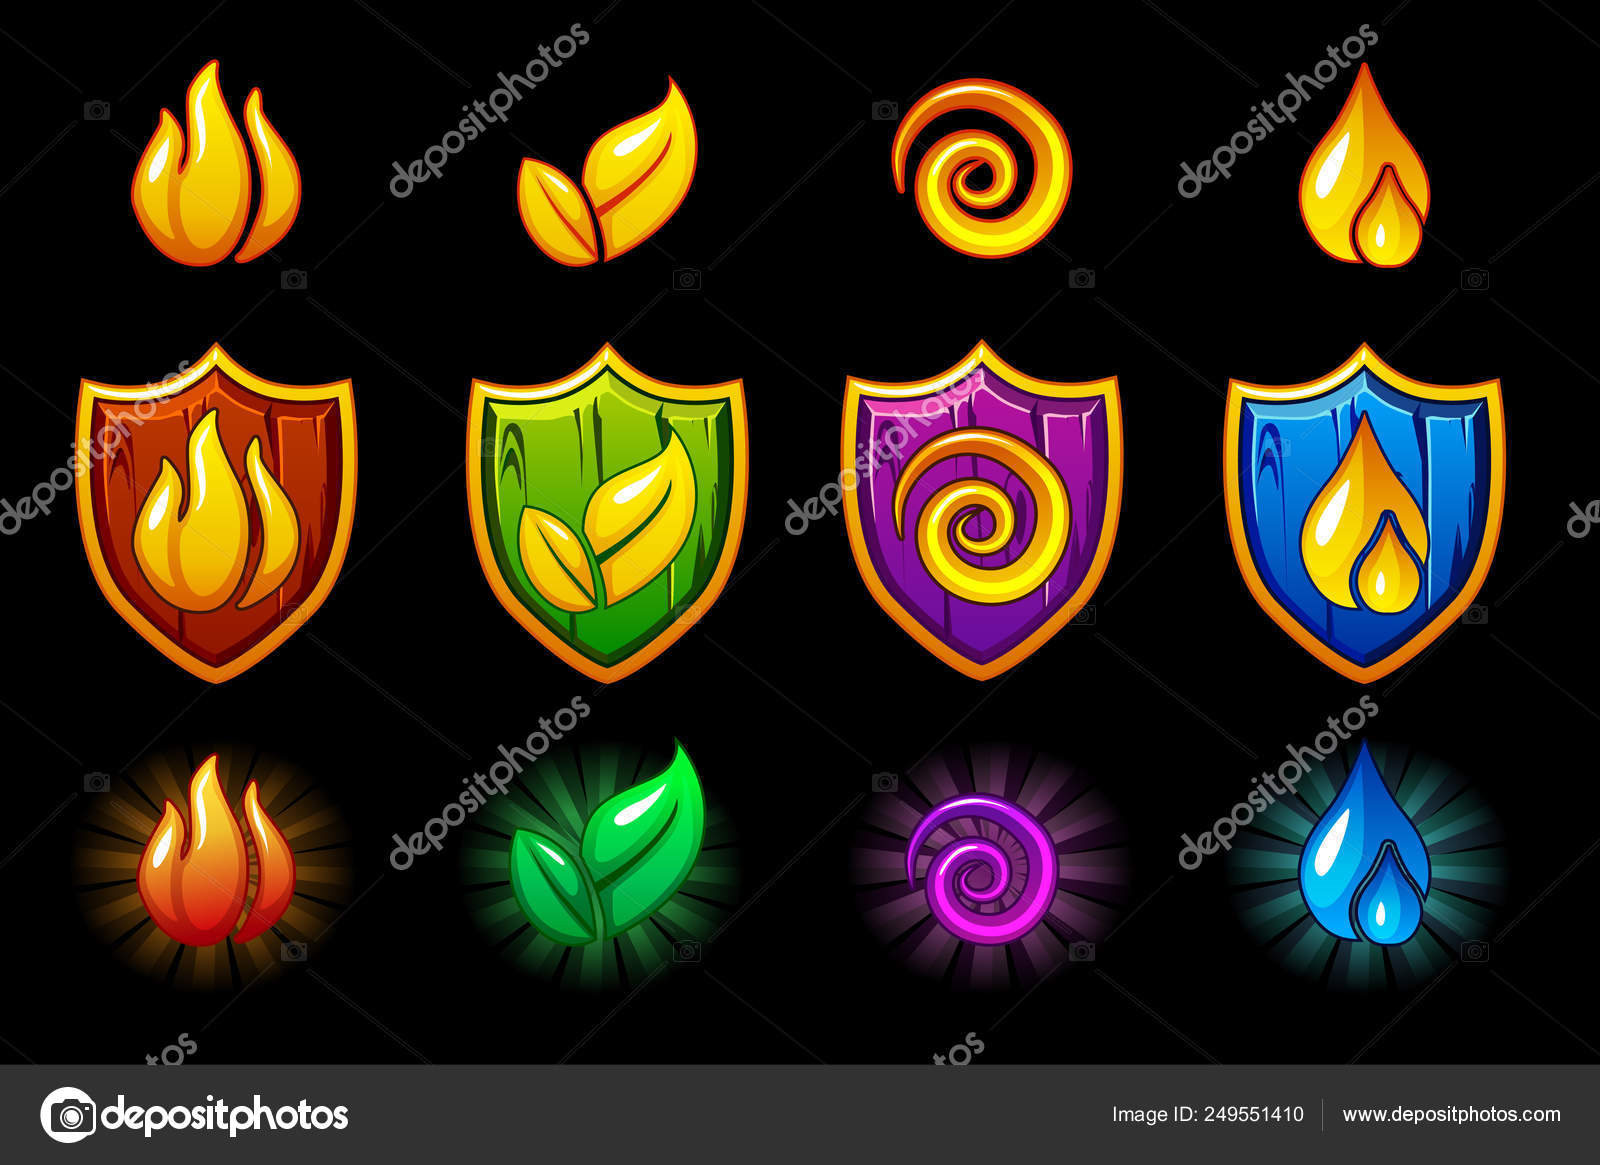 Terra, ar, fogo e água, quatro ícones de elementos da natureza